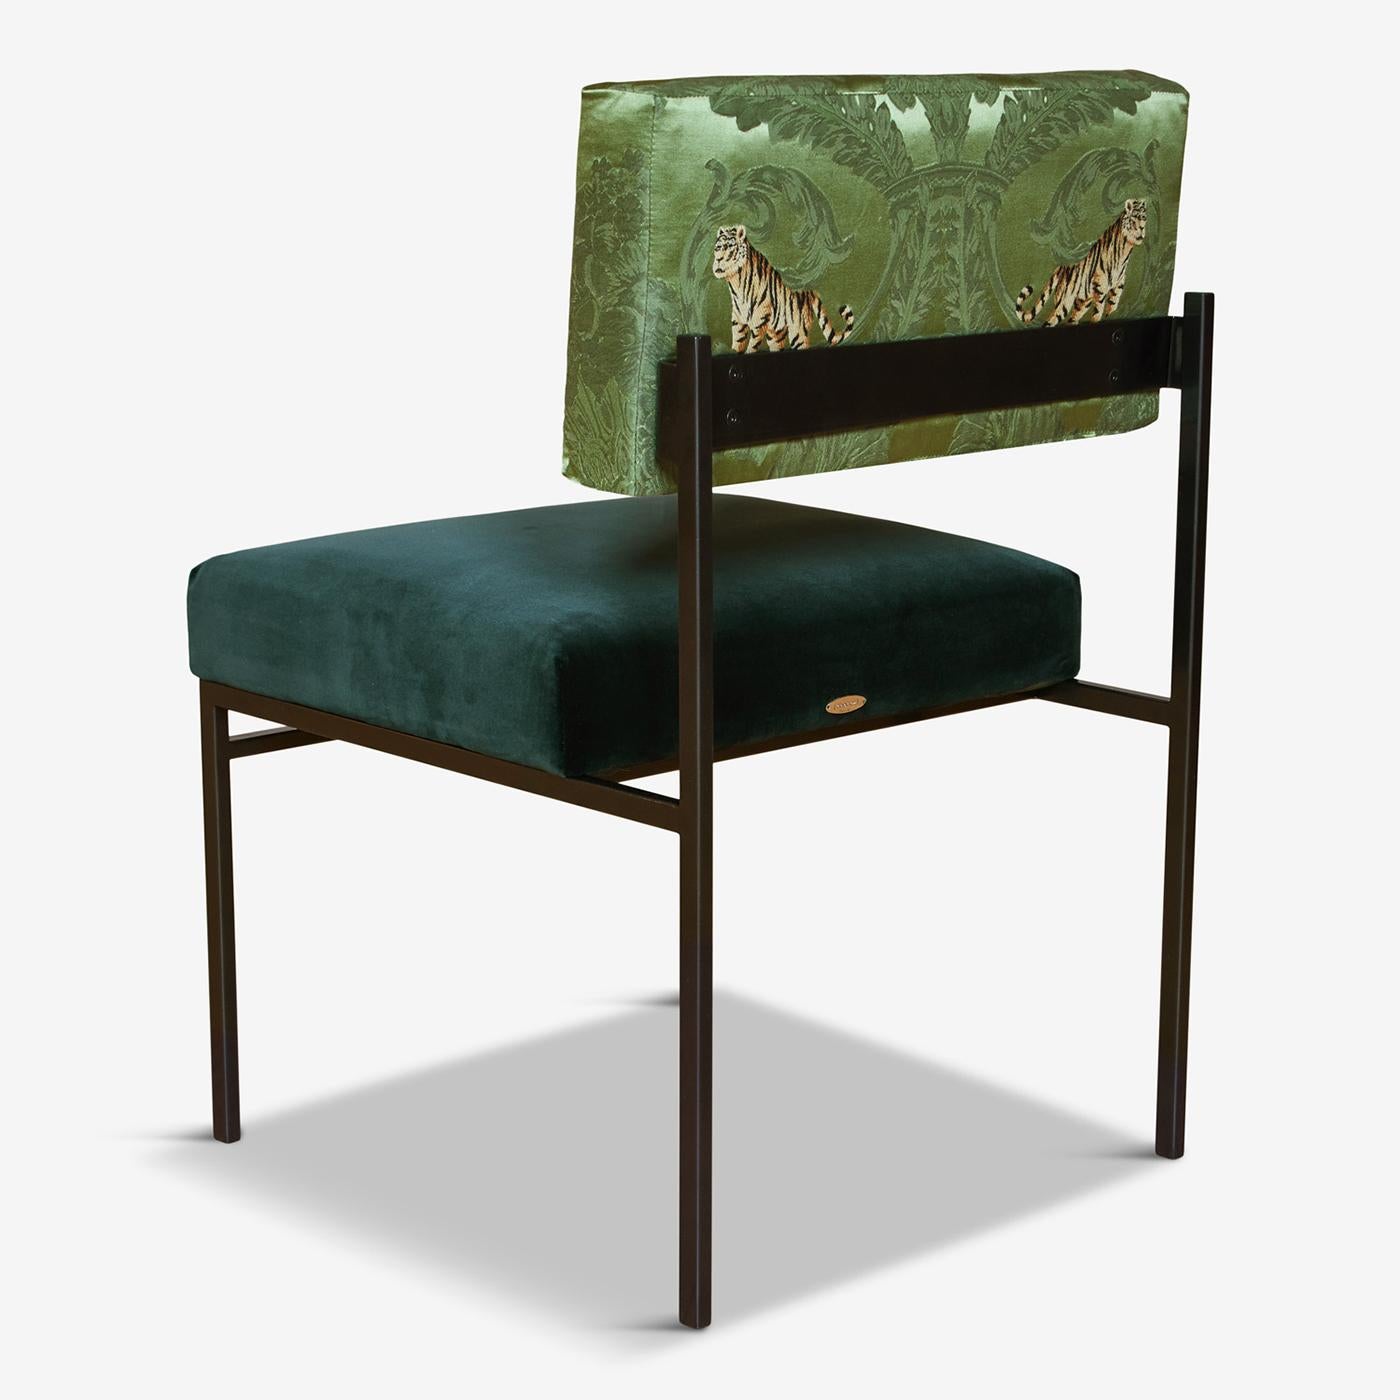 Dieser exklusive Sessel mit seiner schnörkellosen und schnörkellosen Silhouette steht für höchsten Komfort in einer von den 50er Jahren inspirierten Ästhetik. Sowohl die Sitze als auch die offenen Rückenlehnen sind mit Naturlatex, Gänsedaunen und